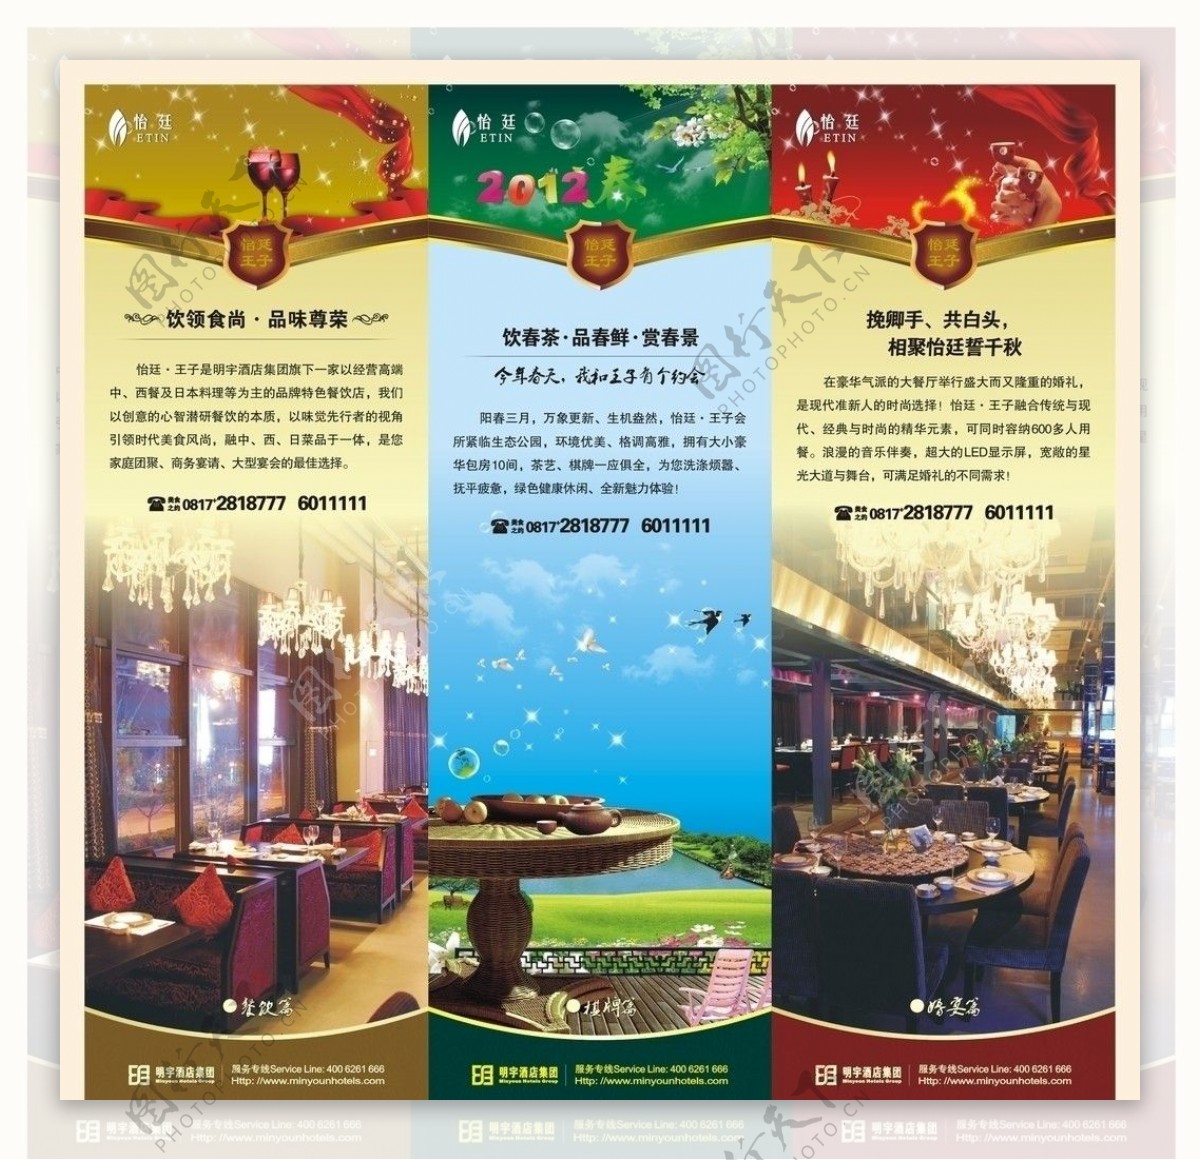 怡廷王子餐厅宣传广告图片